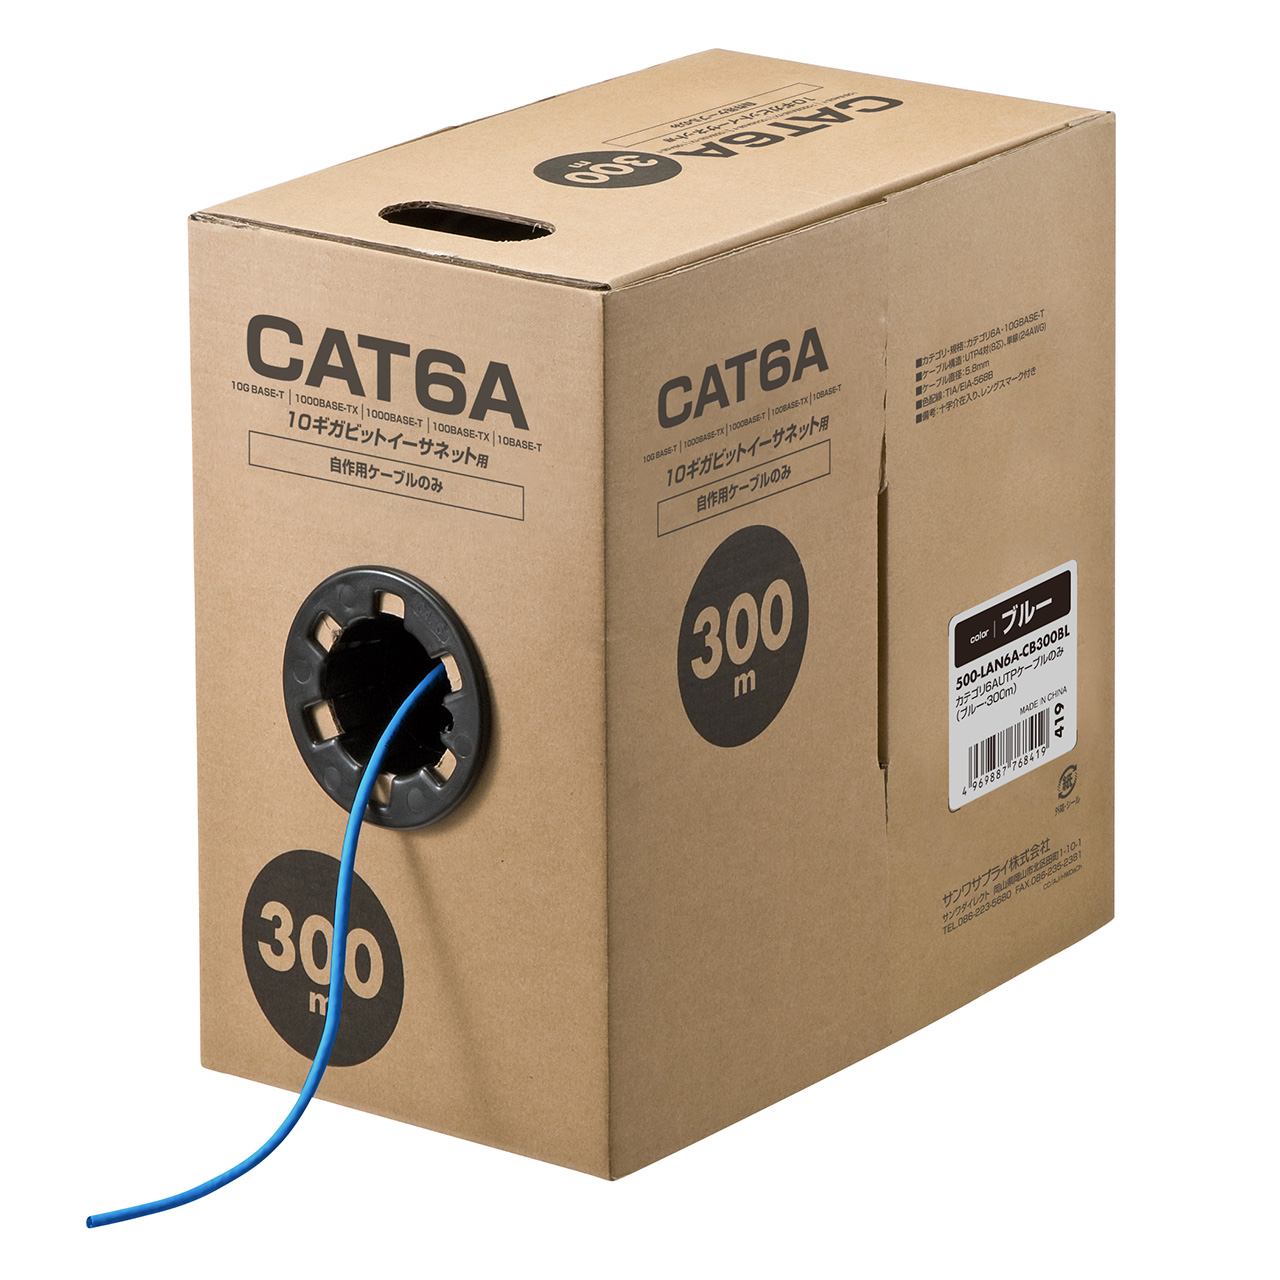 CAT6 cat6a LANケーブル 300m（スマホ、タブレット、パソコン）の商品